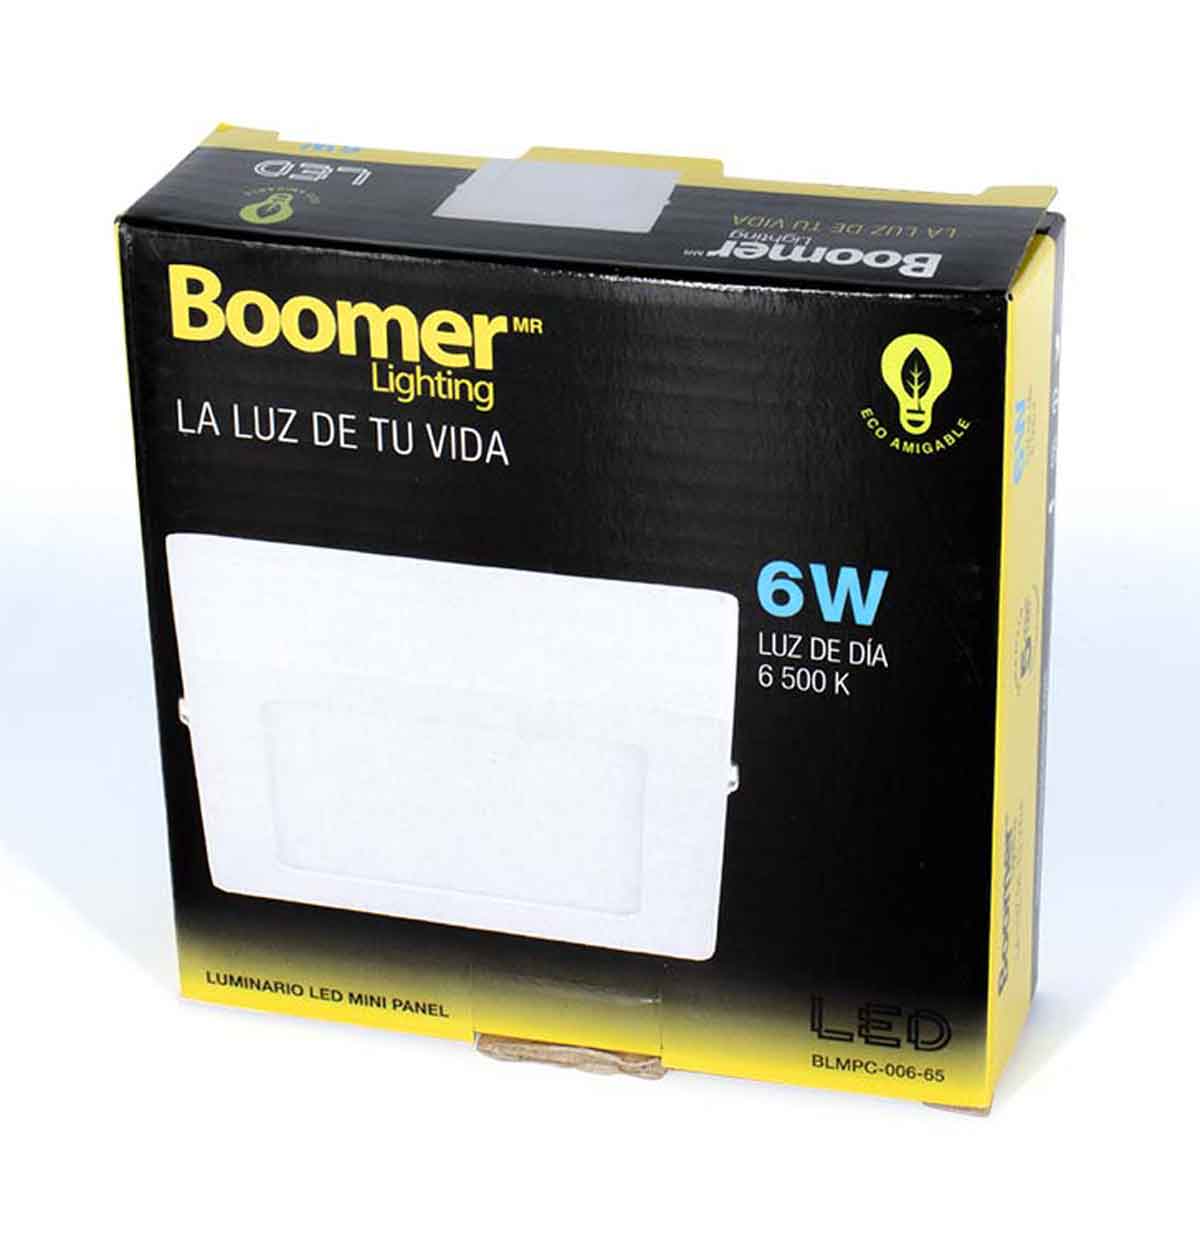 Luminario Mini Panel Led Cuadrado 6W 6500K Luz De Dia Boomer BOOMER Ferreabasto